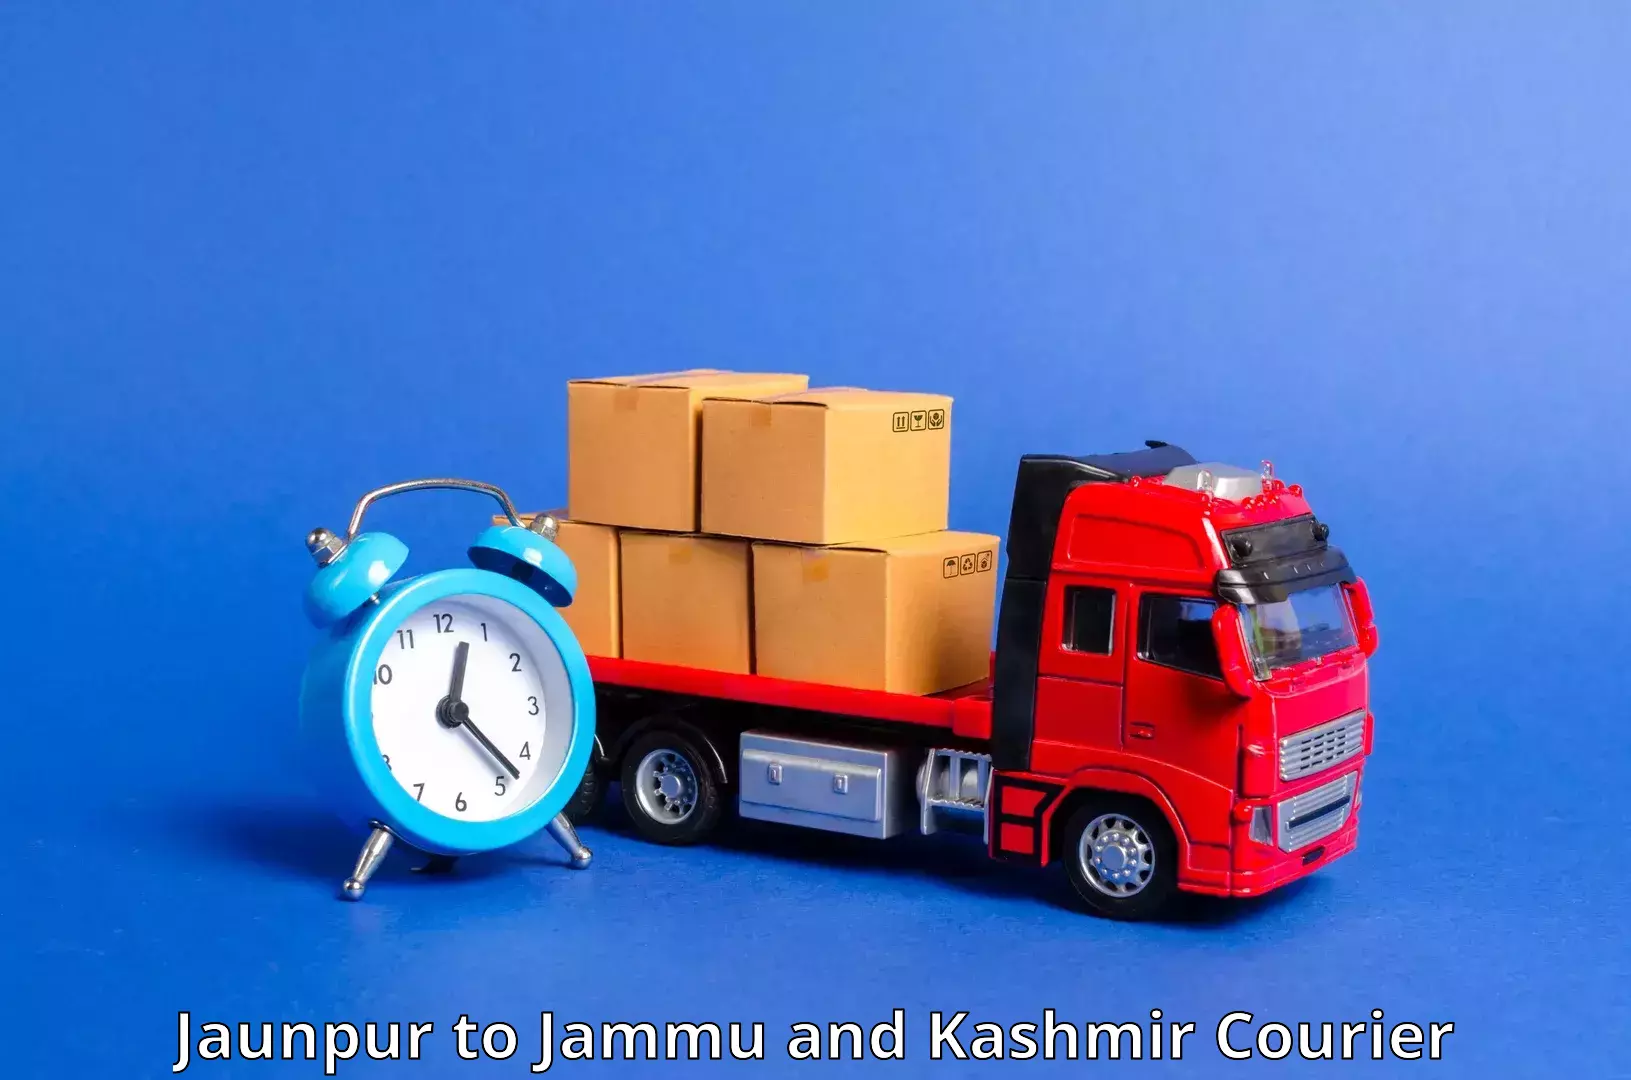 Express courier capabilities Jaunpur to Kargil